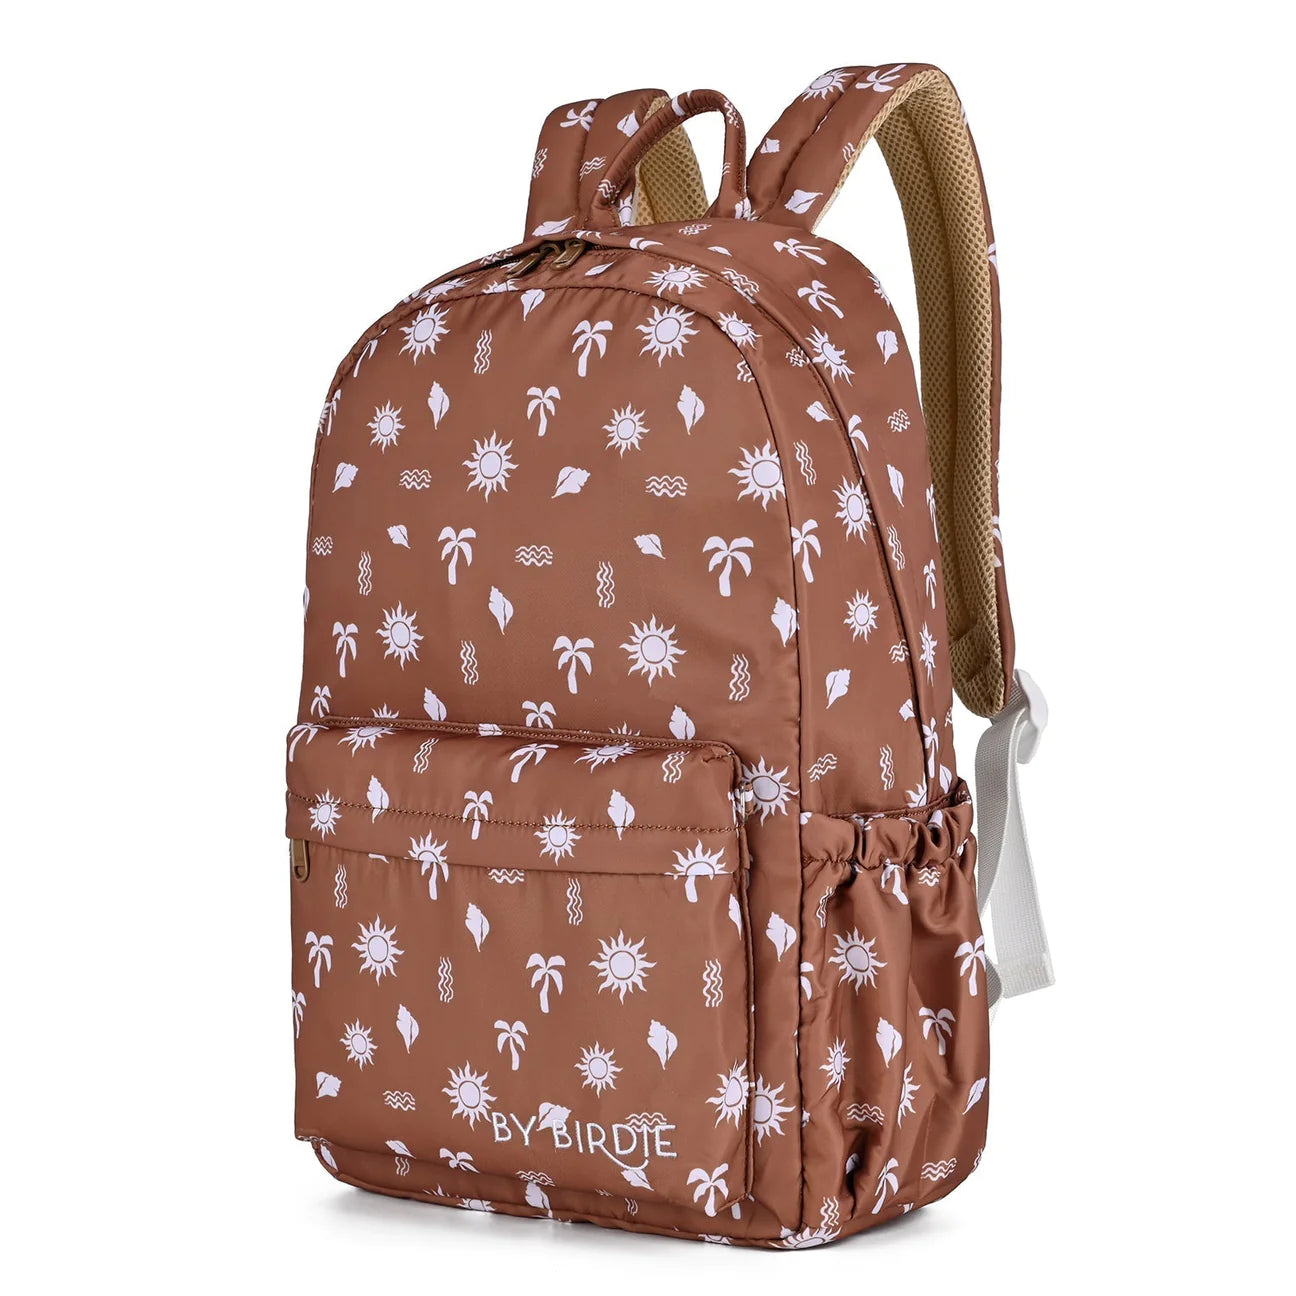 Kinnder - Tan Backpack (Mini)